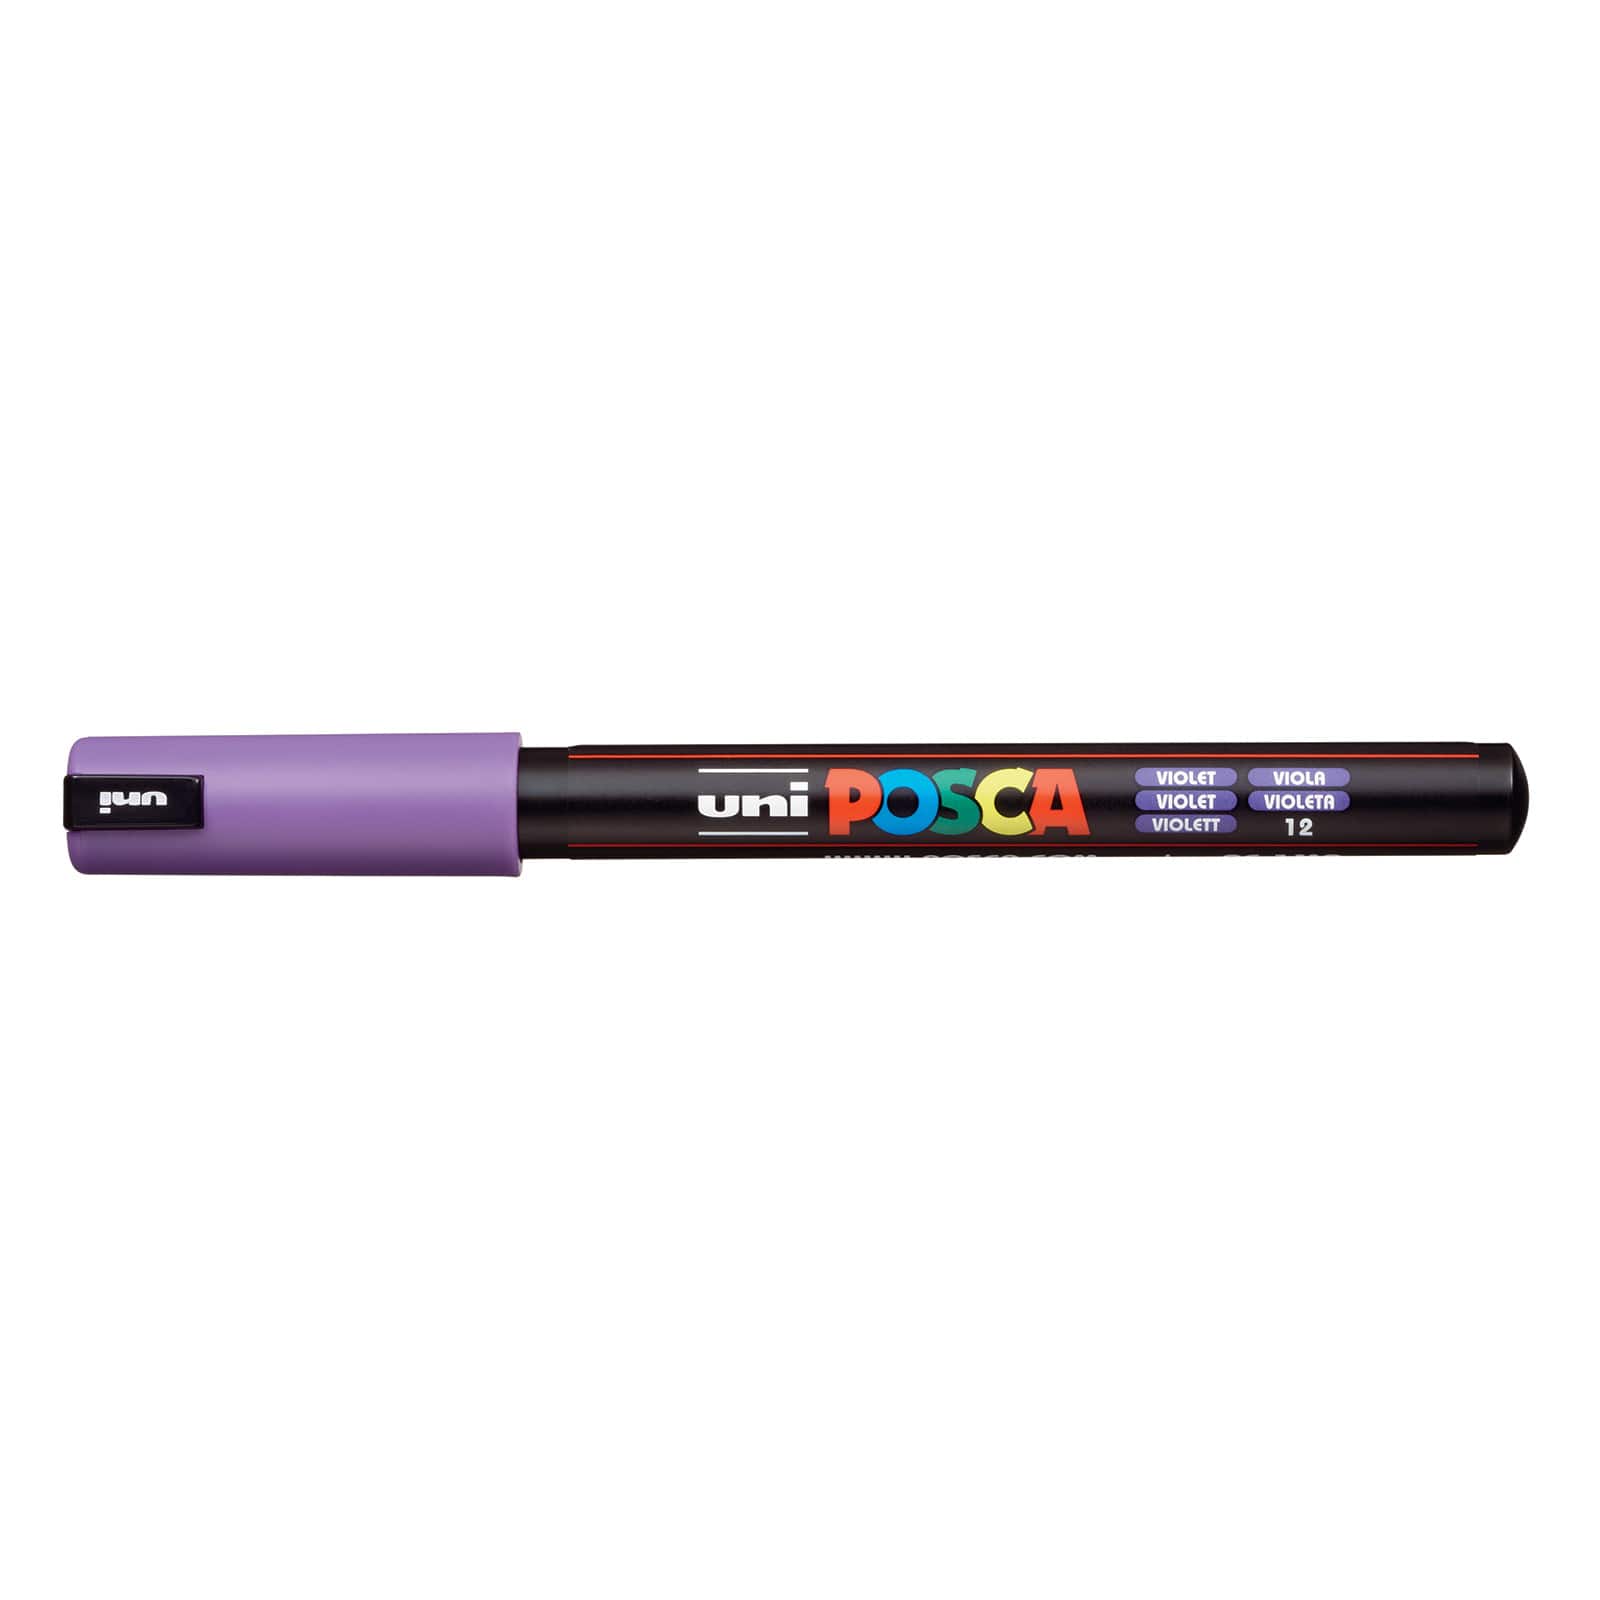 Uni Posca Paint Marker Pen PC-1M 7C Set of 7 Natural Color Extra Fine Point 